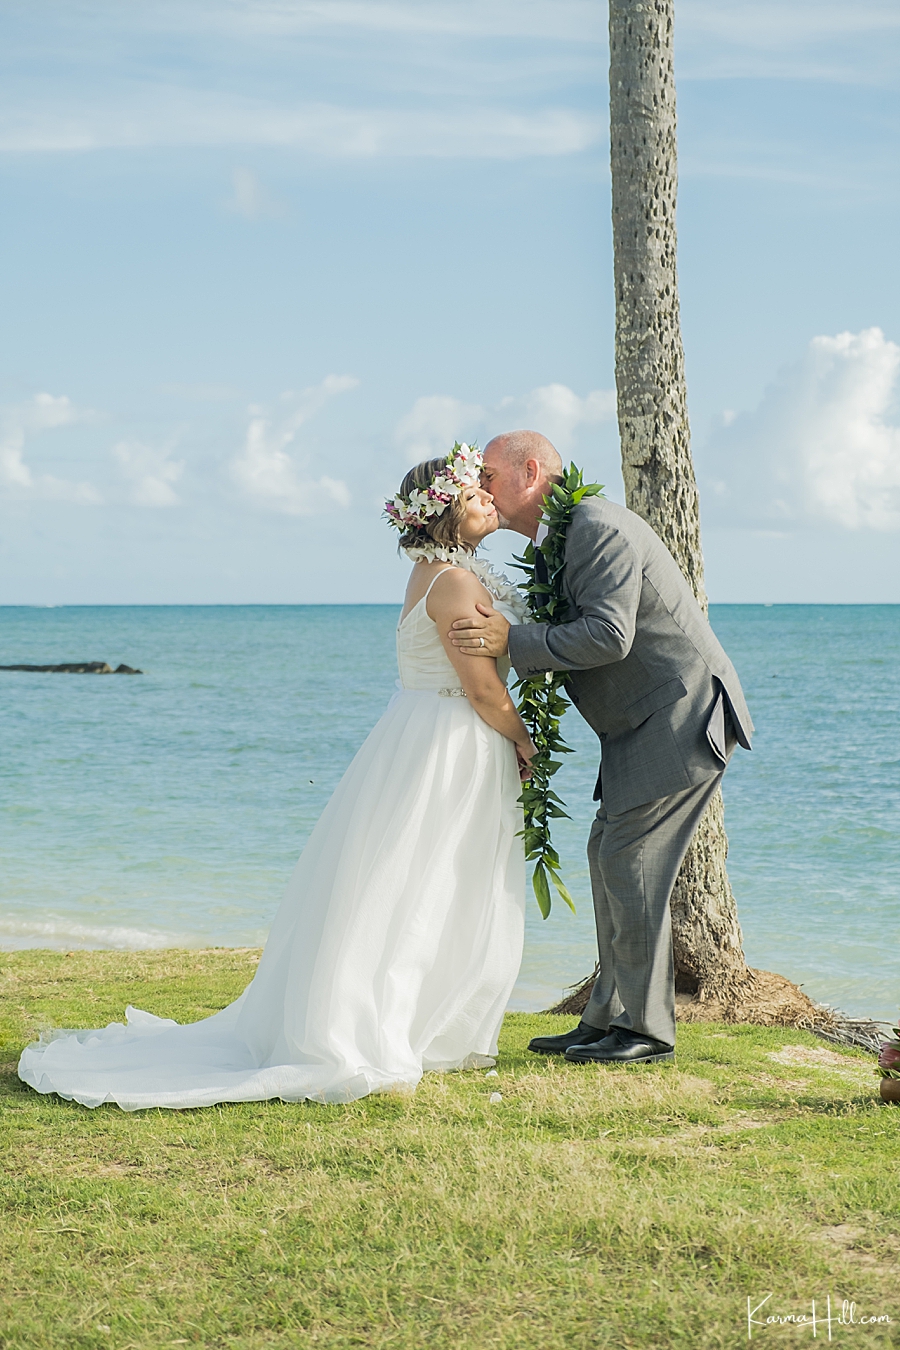 Oahu beach wedding locations
